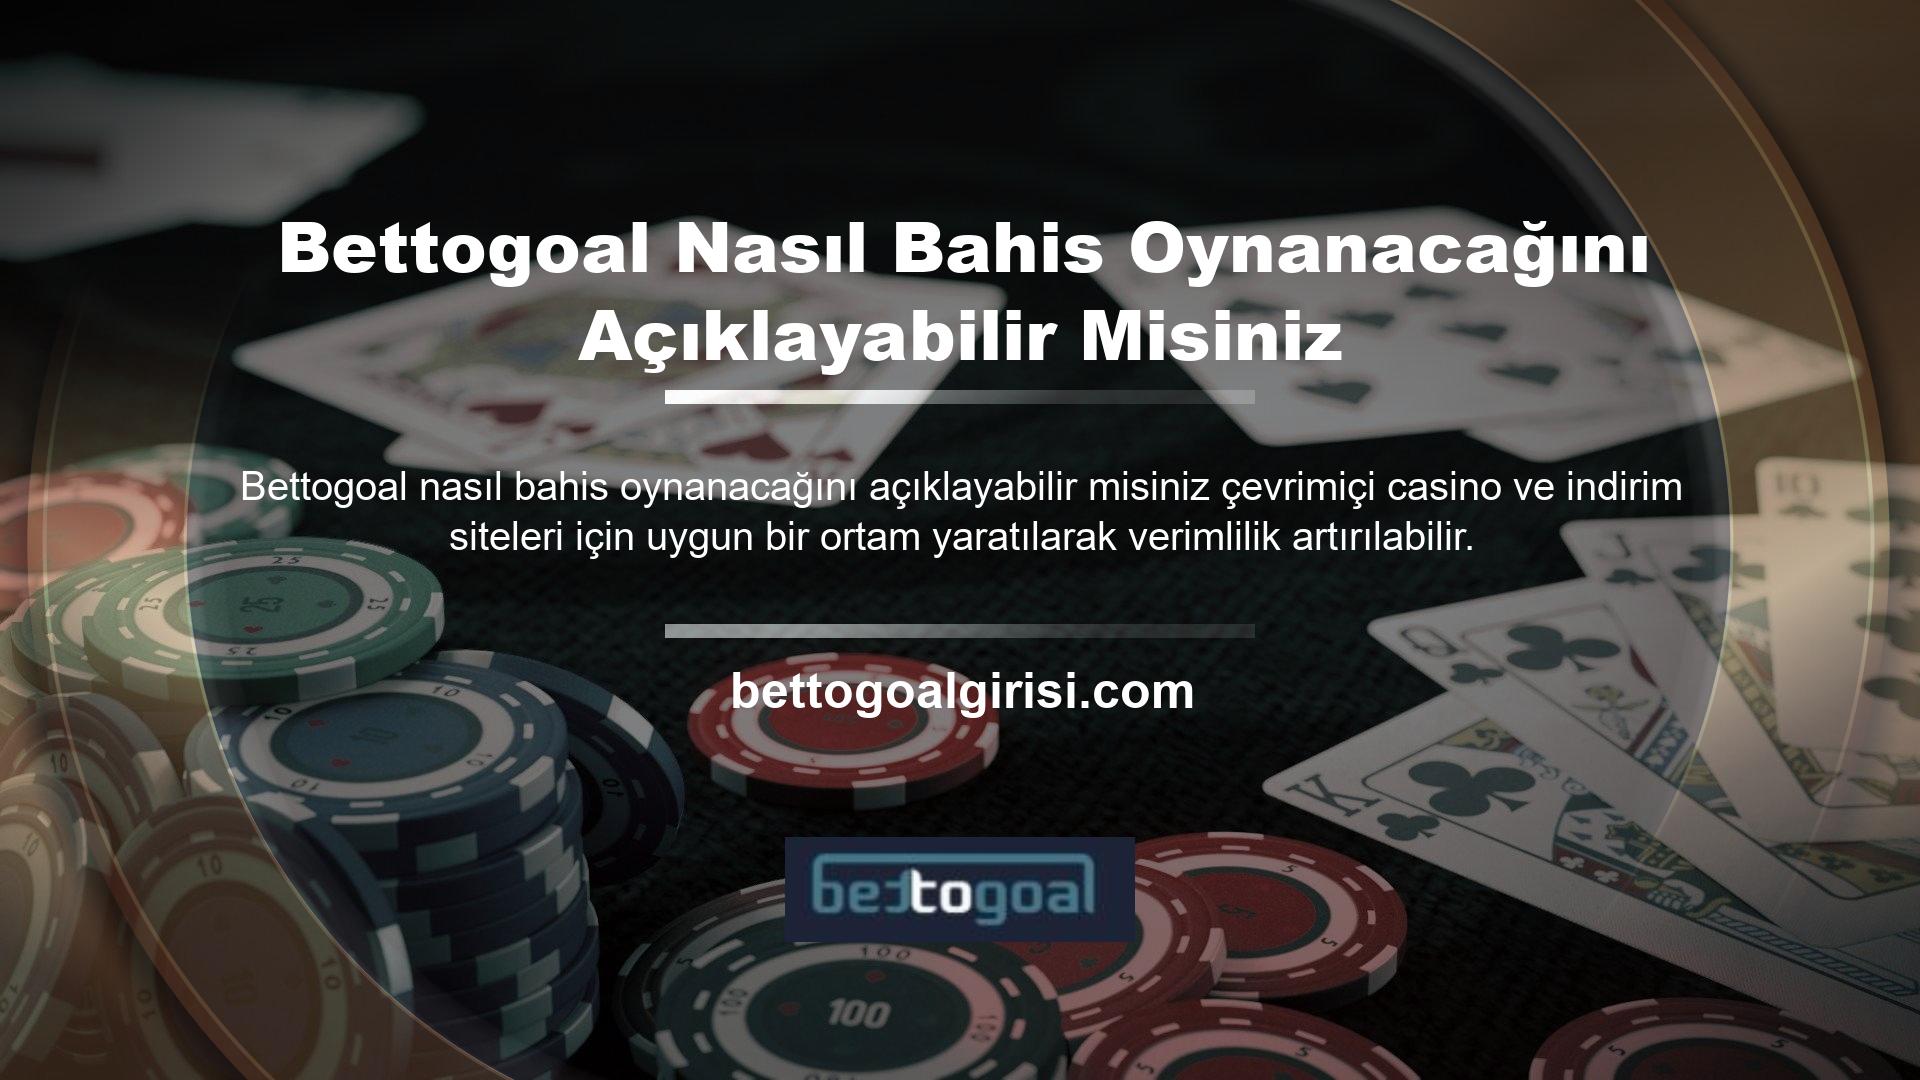 Kullanıcılara çevrimiçi casino sitesi Bettogoal ile ilgili soruların yanıtları ve bu sayfadaki soru işaretlerinin kaldırılması sağlanır